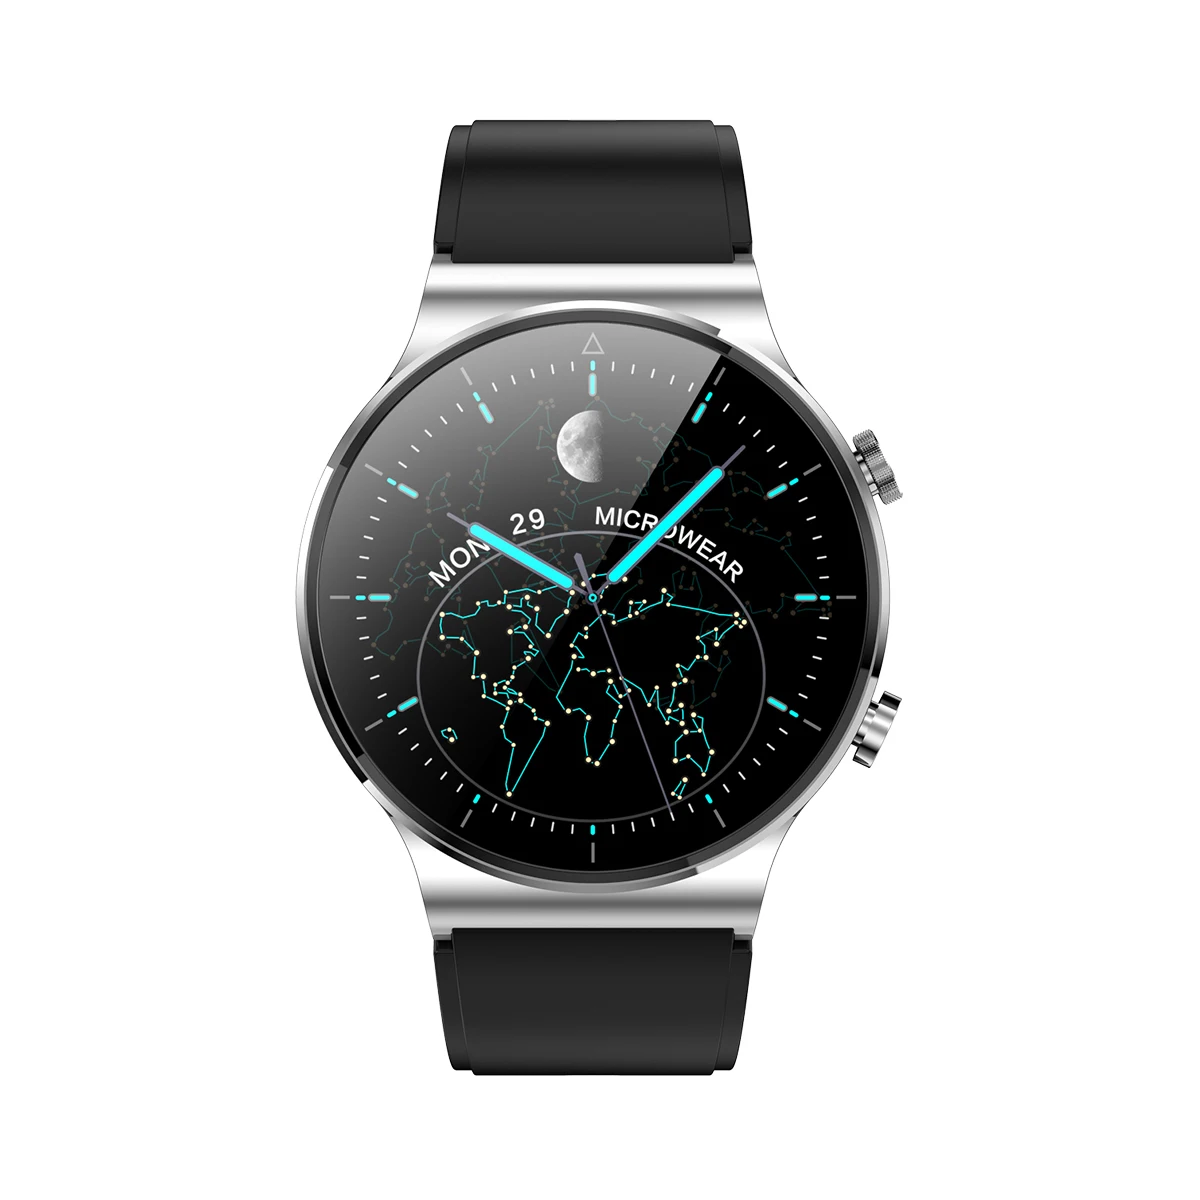 

2021 New arrival smartwatch M2pro waterproof IP68 wireless charging smart watch Reloj Inteligente full touch screen GT2PRO GT2, Many colors